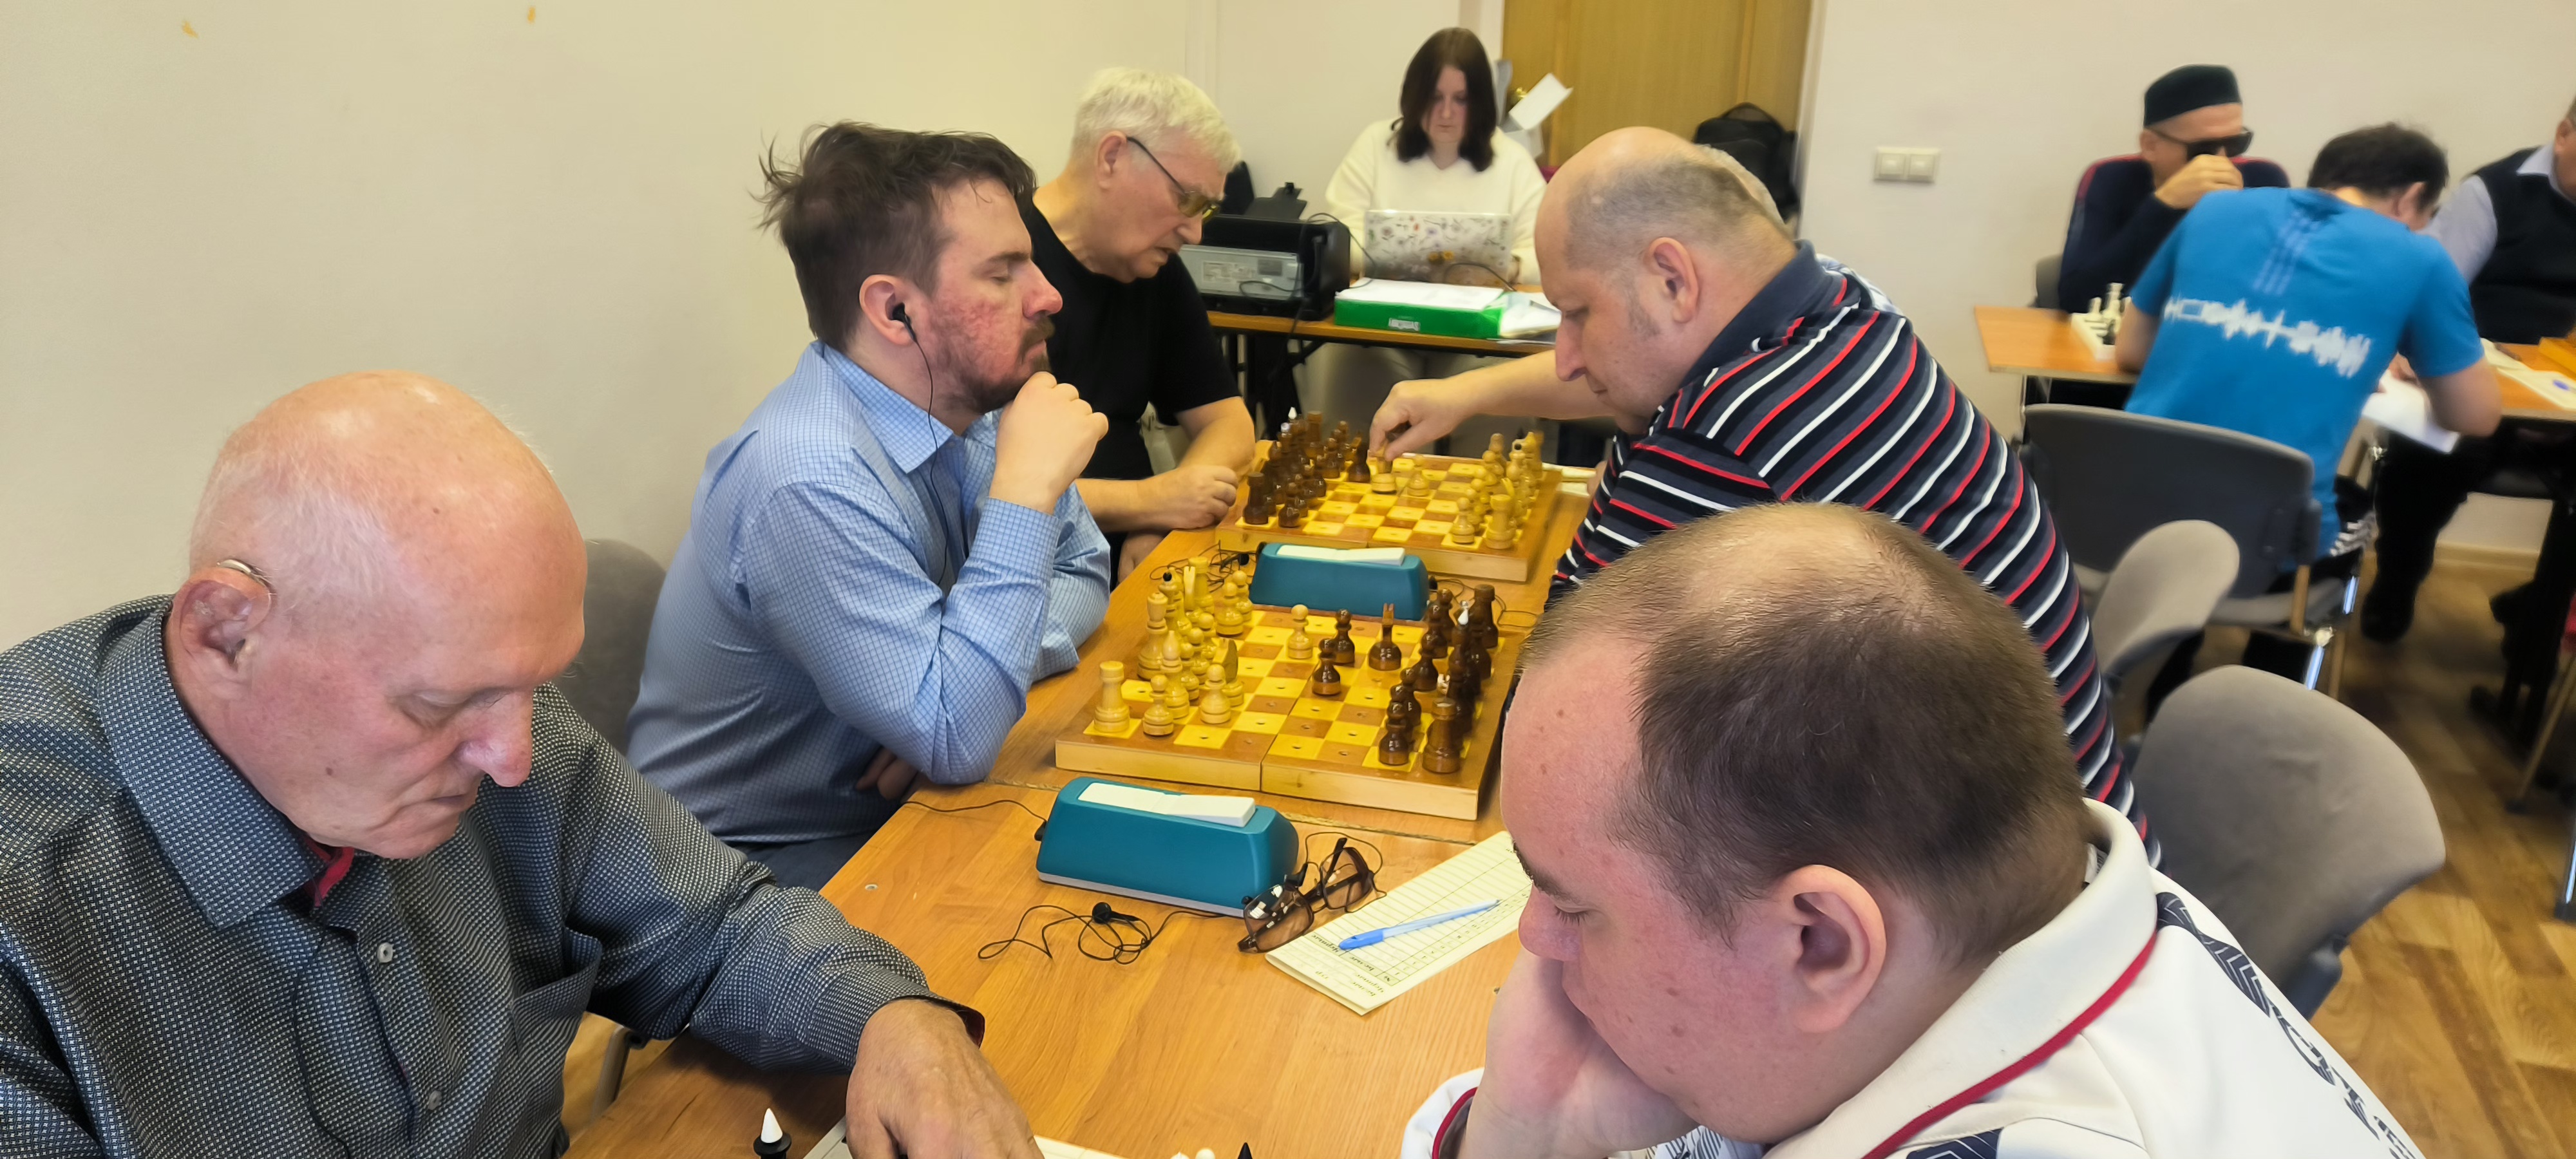 8 ноября в г. Ярославле стартовал чемпионат России по спорту слепых, дисциплина: шахматы – быстрая игра – командные соревнования (В1, В2, В3). 